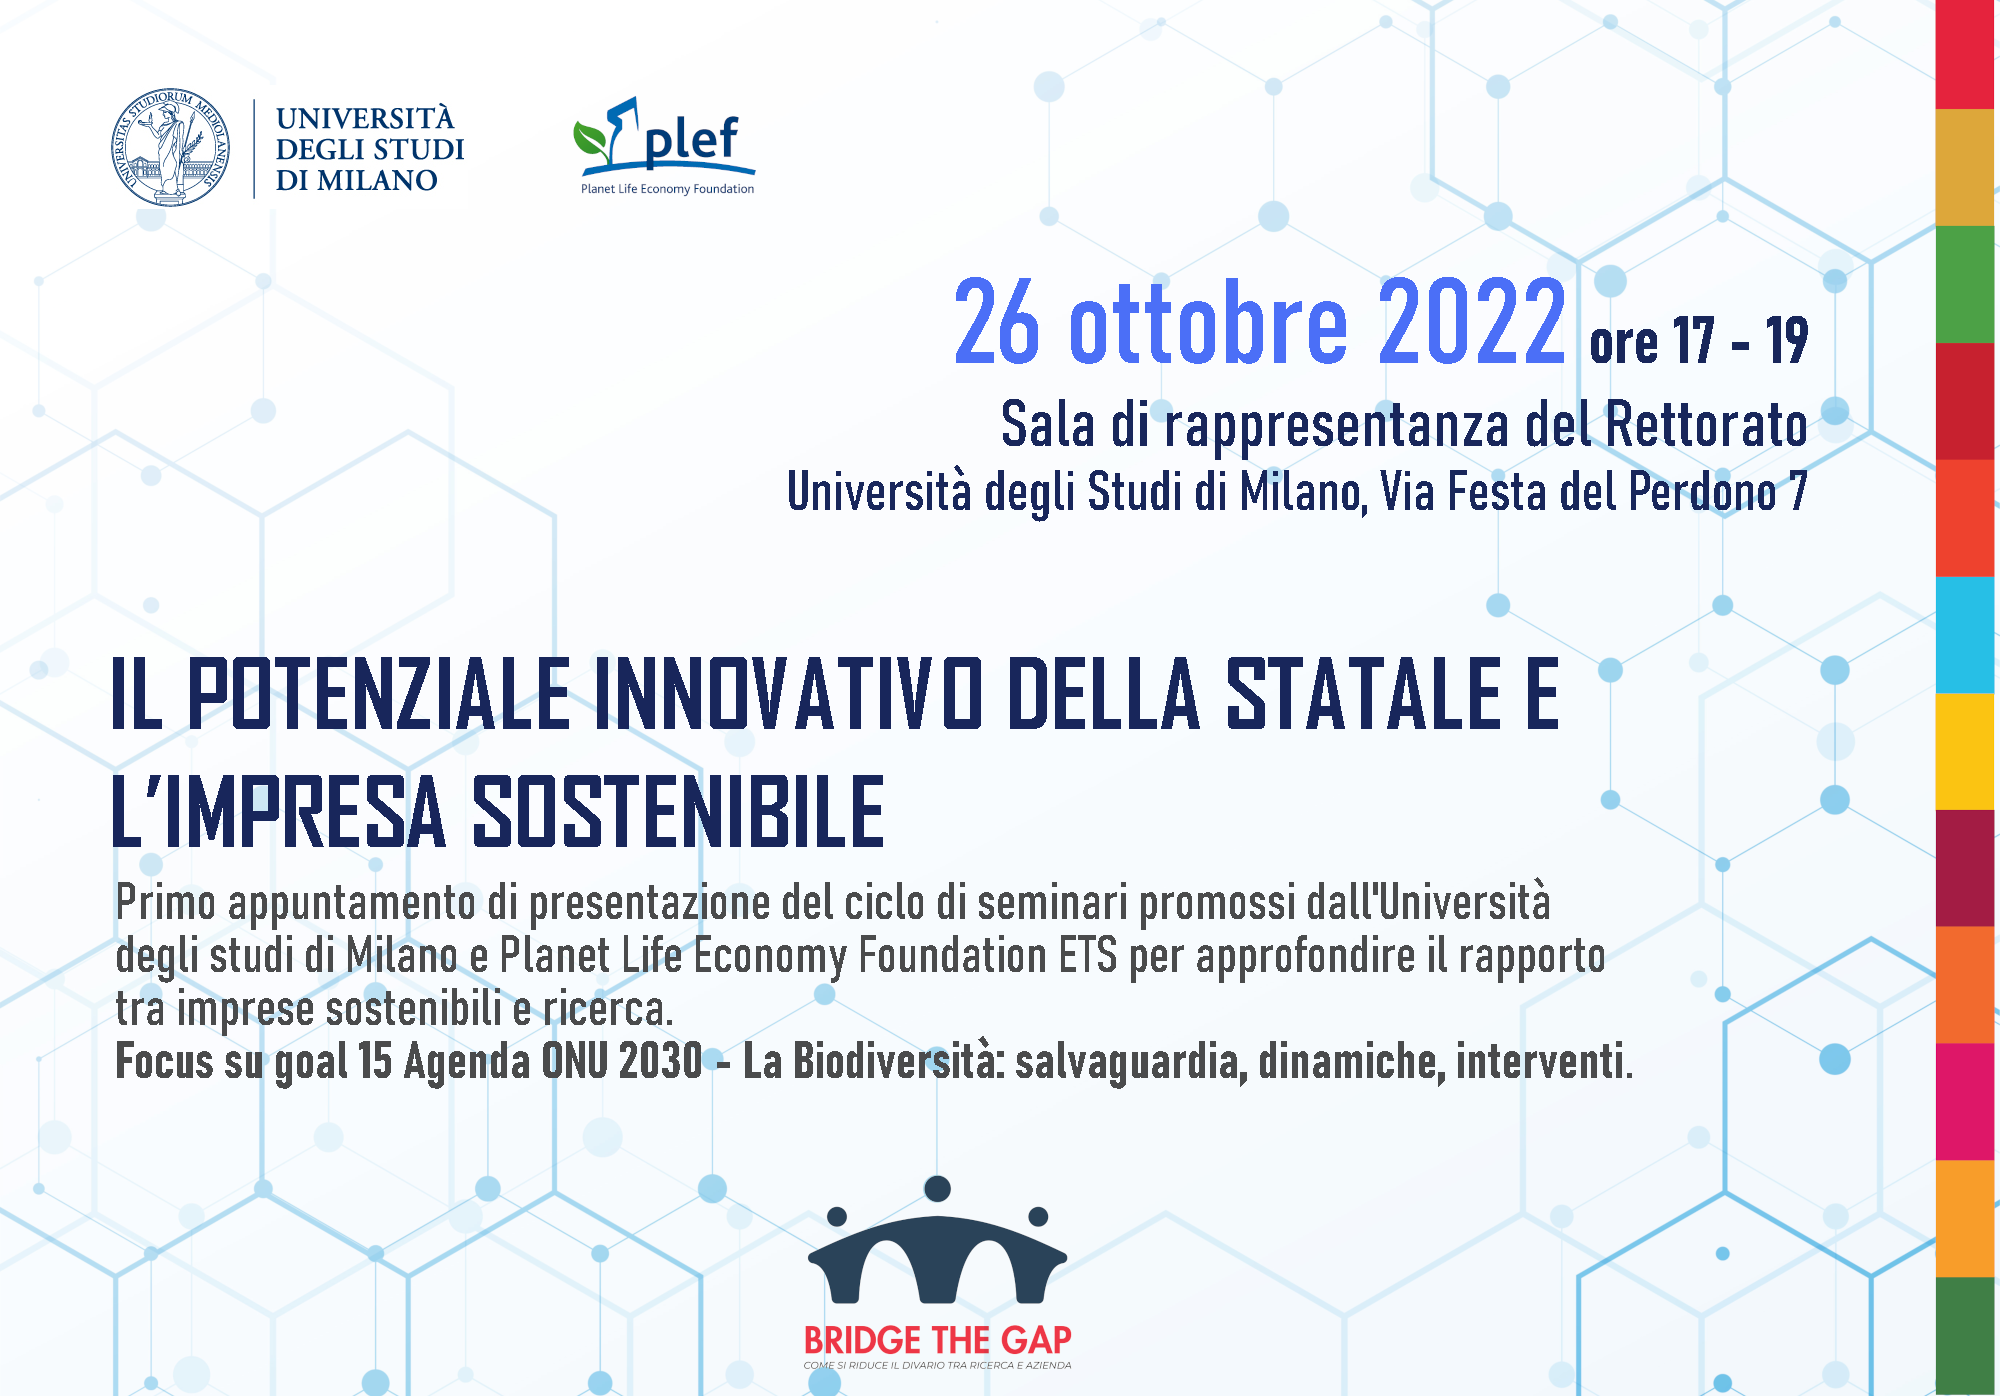 PLEF - Il potenziale innovativo dell’Università Statale di Milano e l’impresa sostenibile